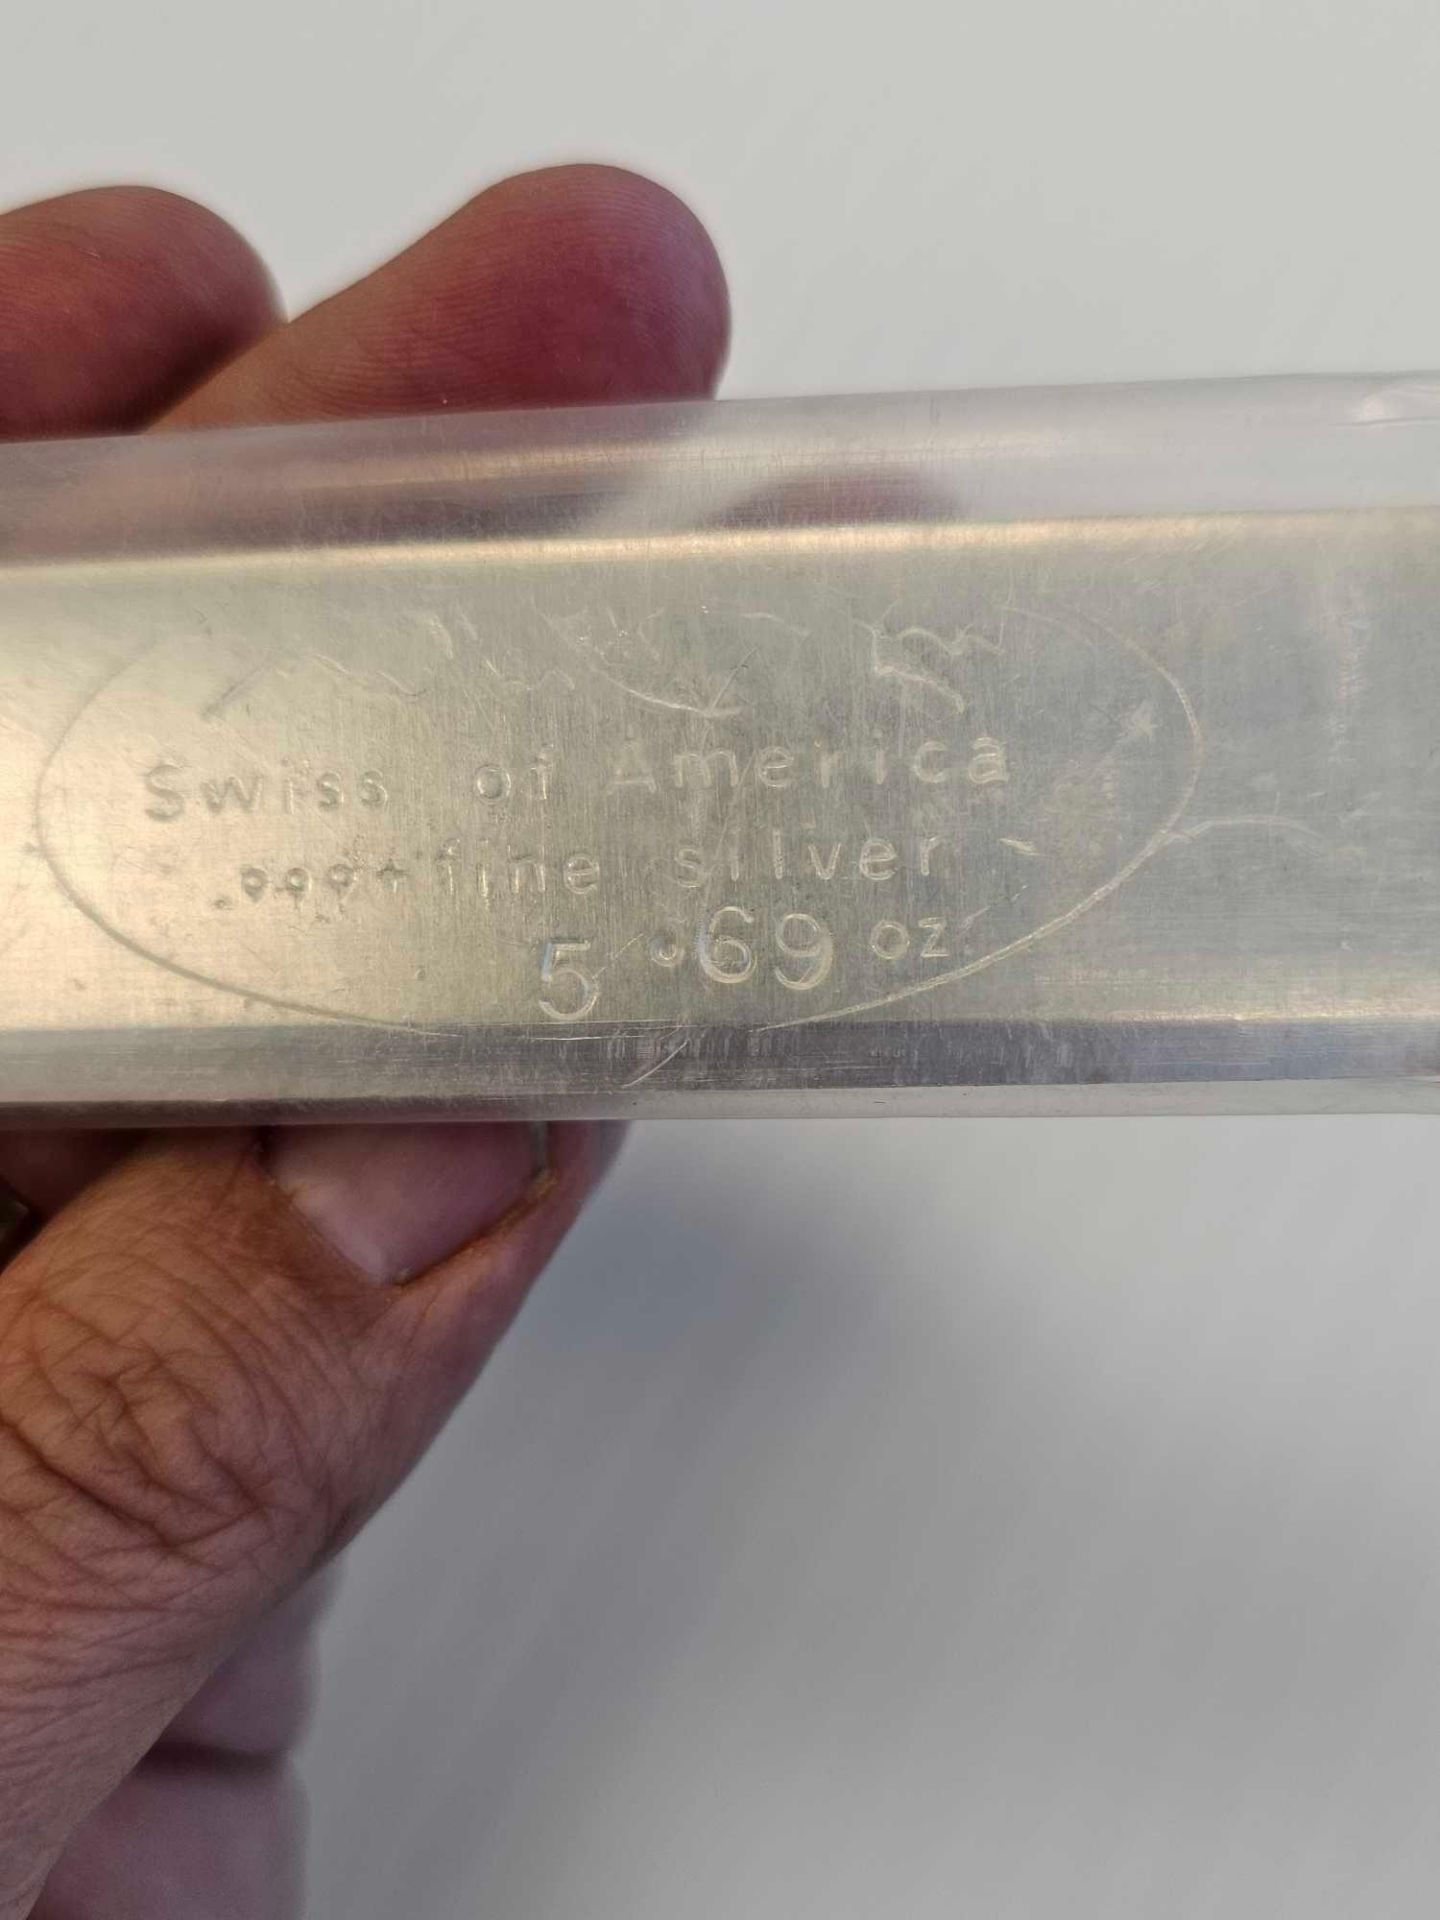 rare 5.69 oz vintage draper mint silver bar (kit Kat stick) - Image 2 of 4